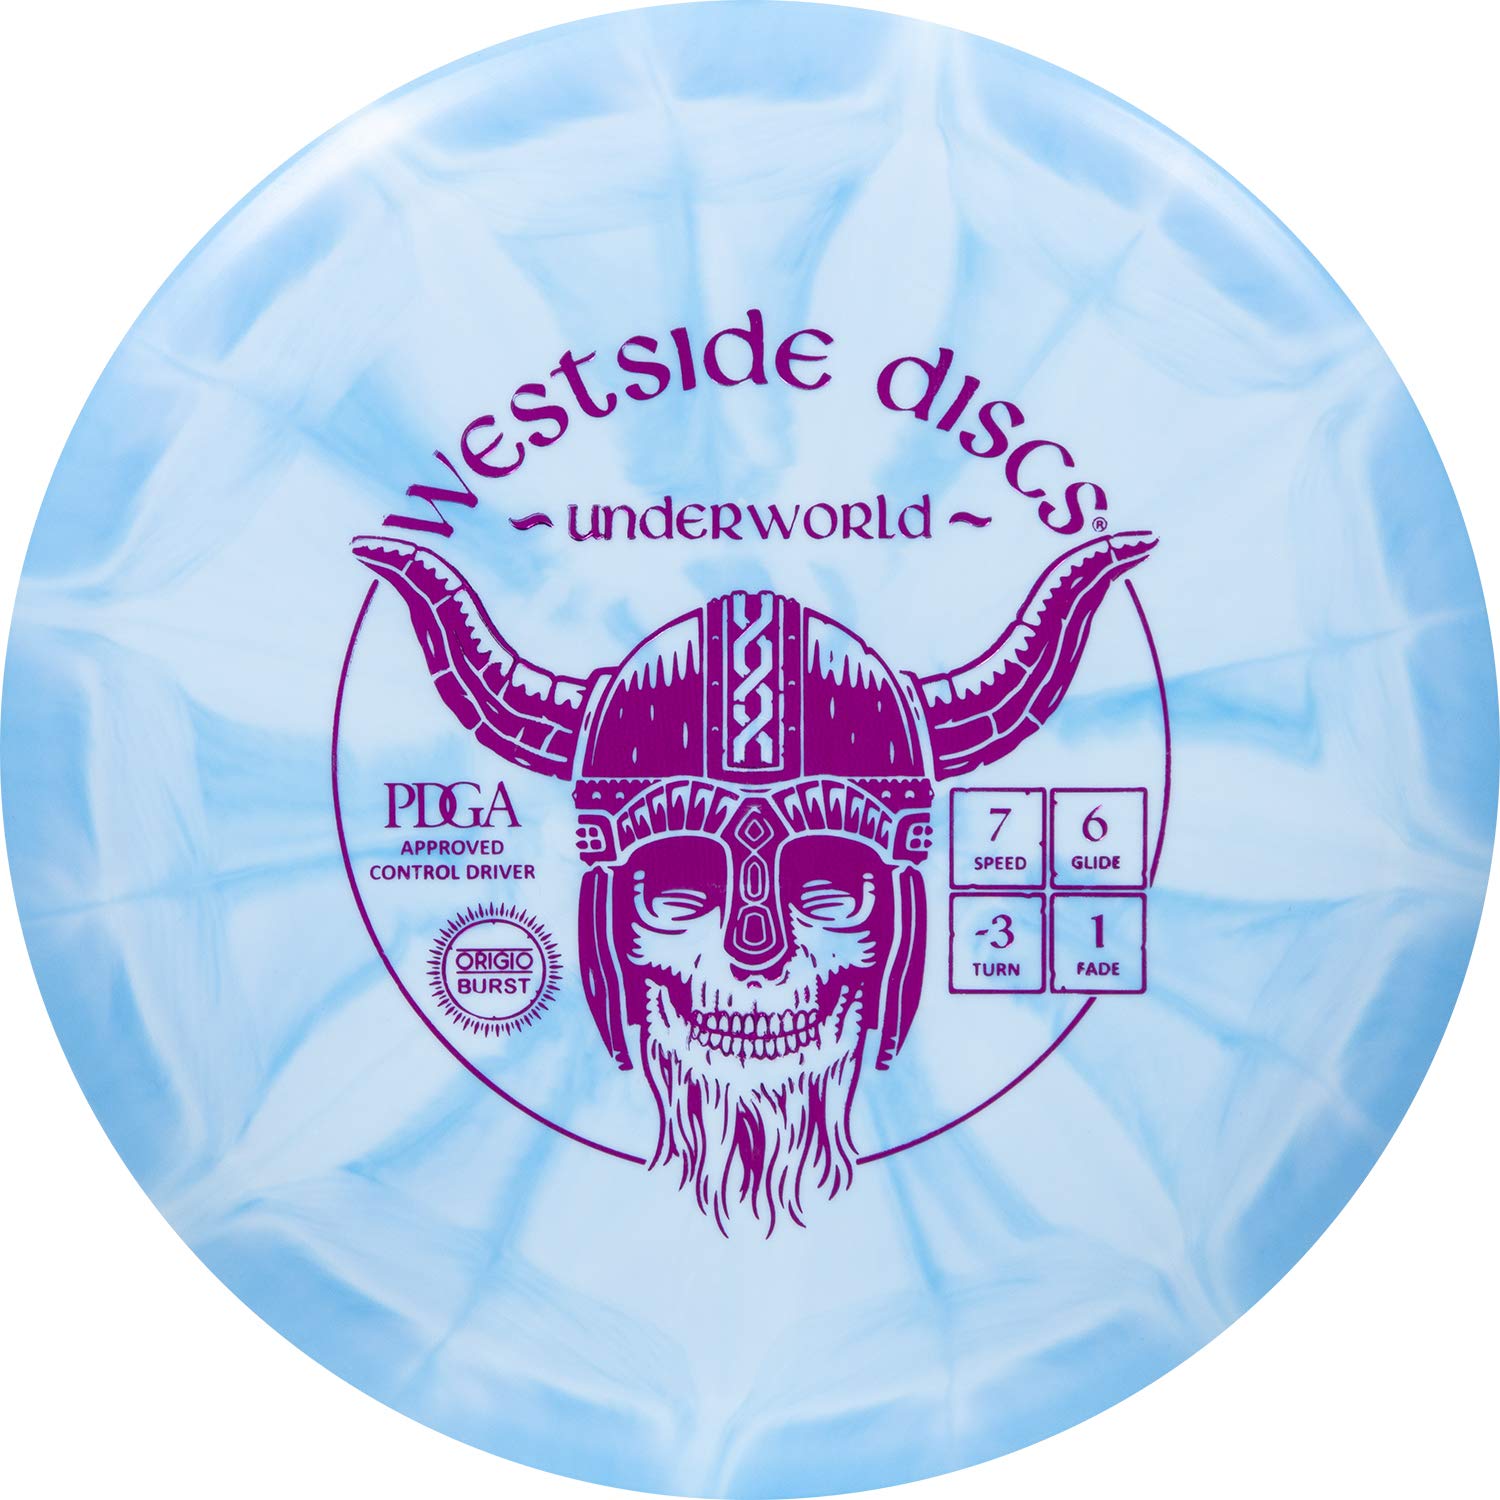 Westside Discs Origio Burst Underworld Fairway Disc Golf Driver